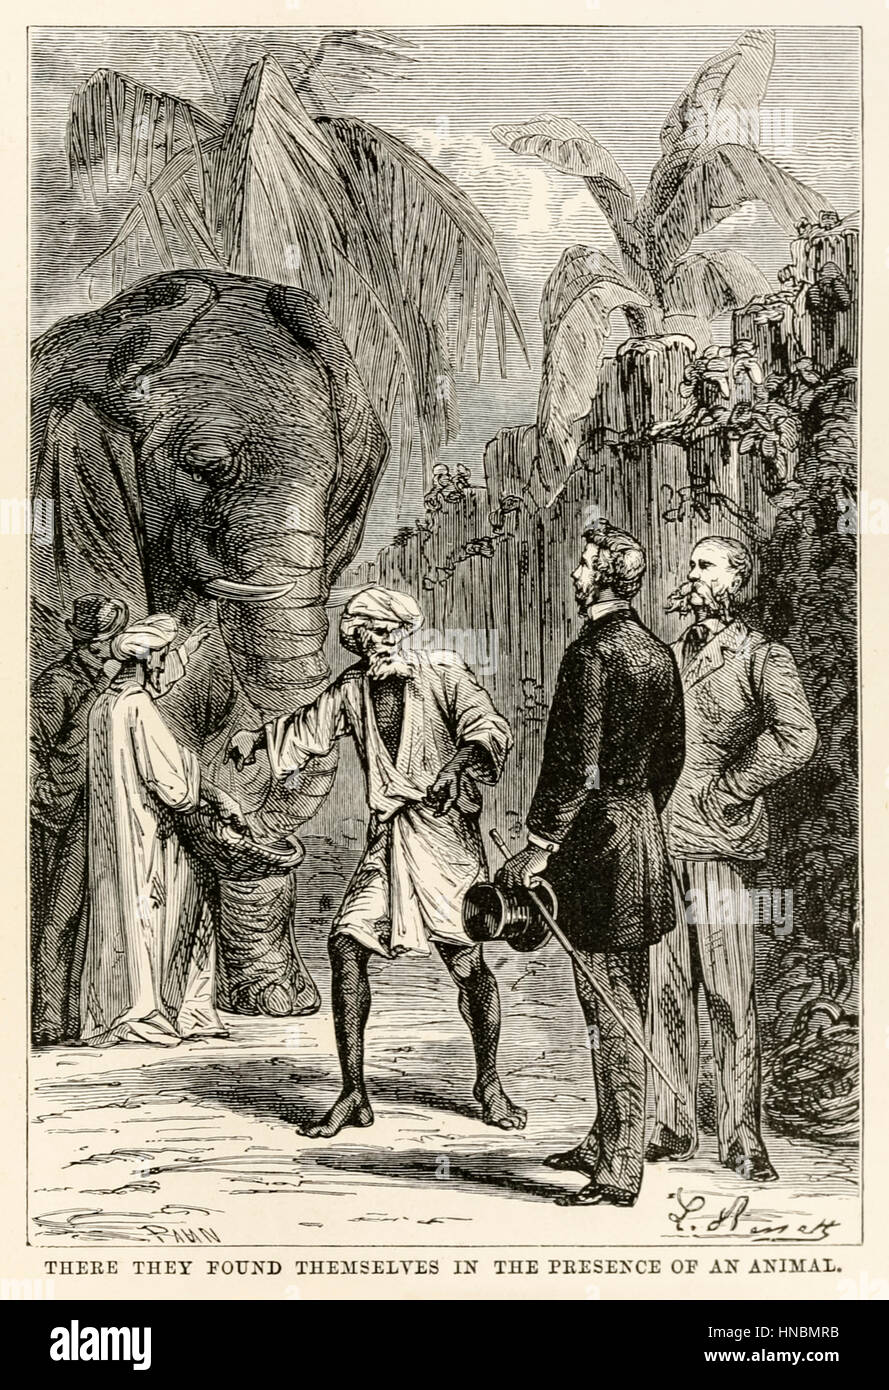 "Vi si trovarono in presenza di un animale." Da "il giro del mondo in ottanta giorni " di Jules Verne (1828-1905), pubblicato nel 1873 Illustrazione di Léon Benet (1839-1917) e da Adolphe François Pannemaker (1822-1900). Foto Stock